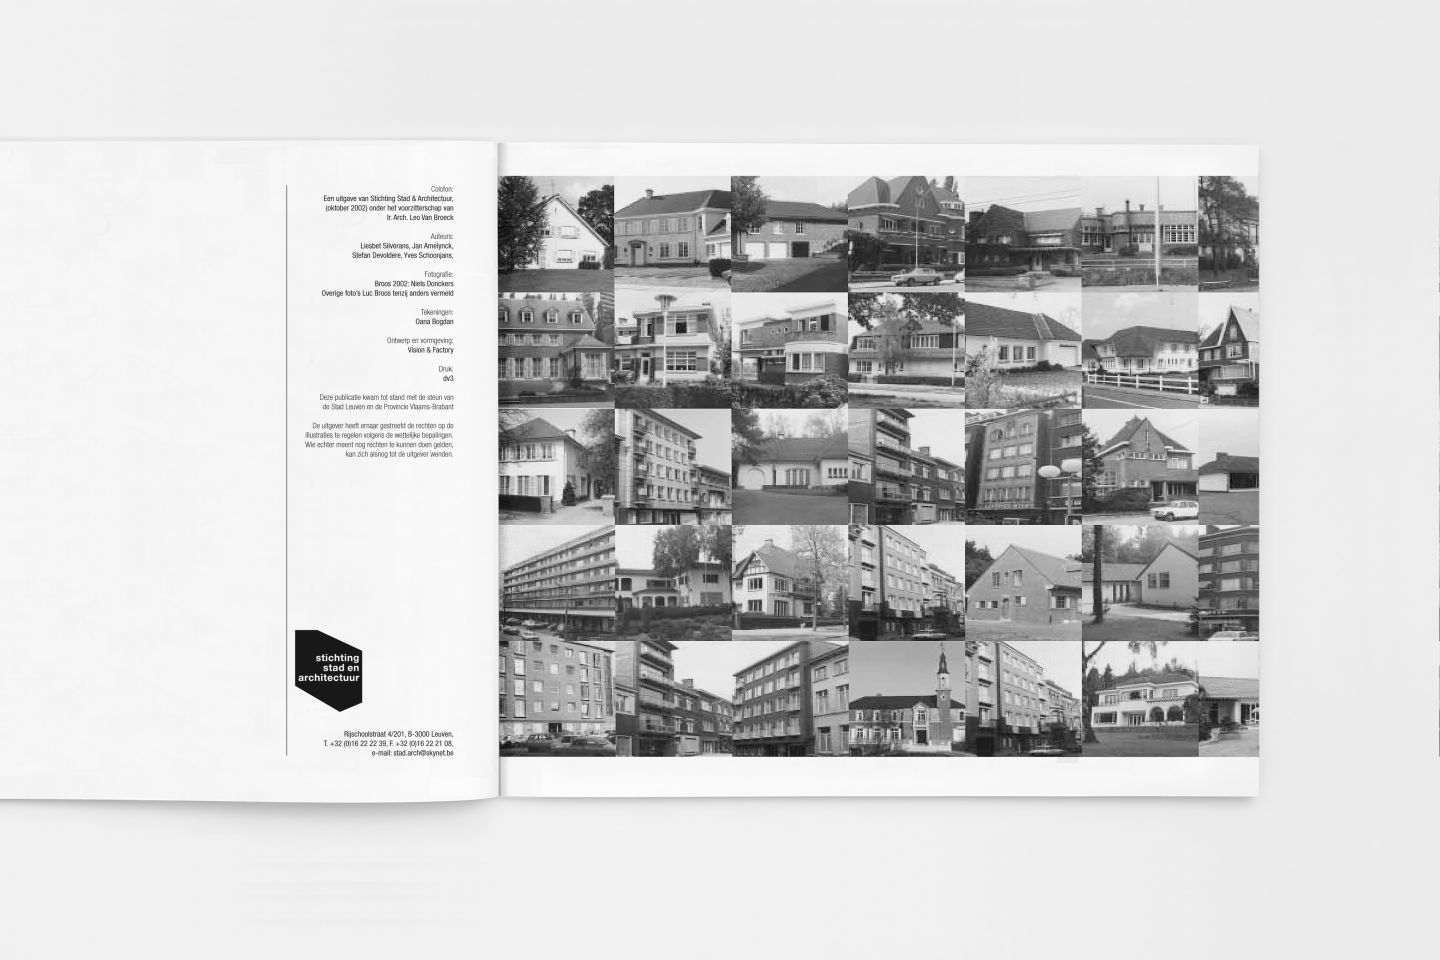 hugo-puttaert-marcel-lennartz-visionandfactory-stichting-architectuur